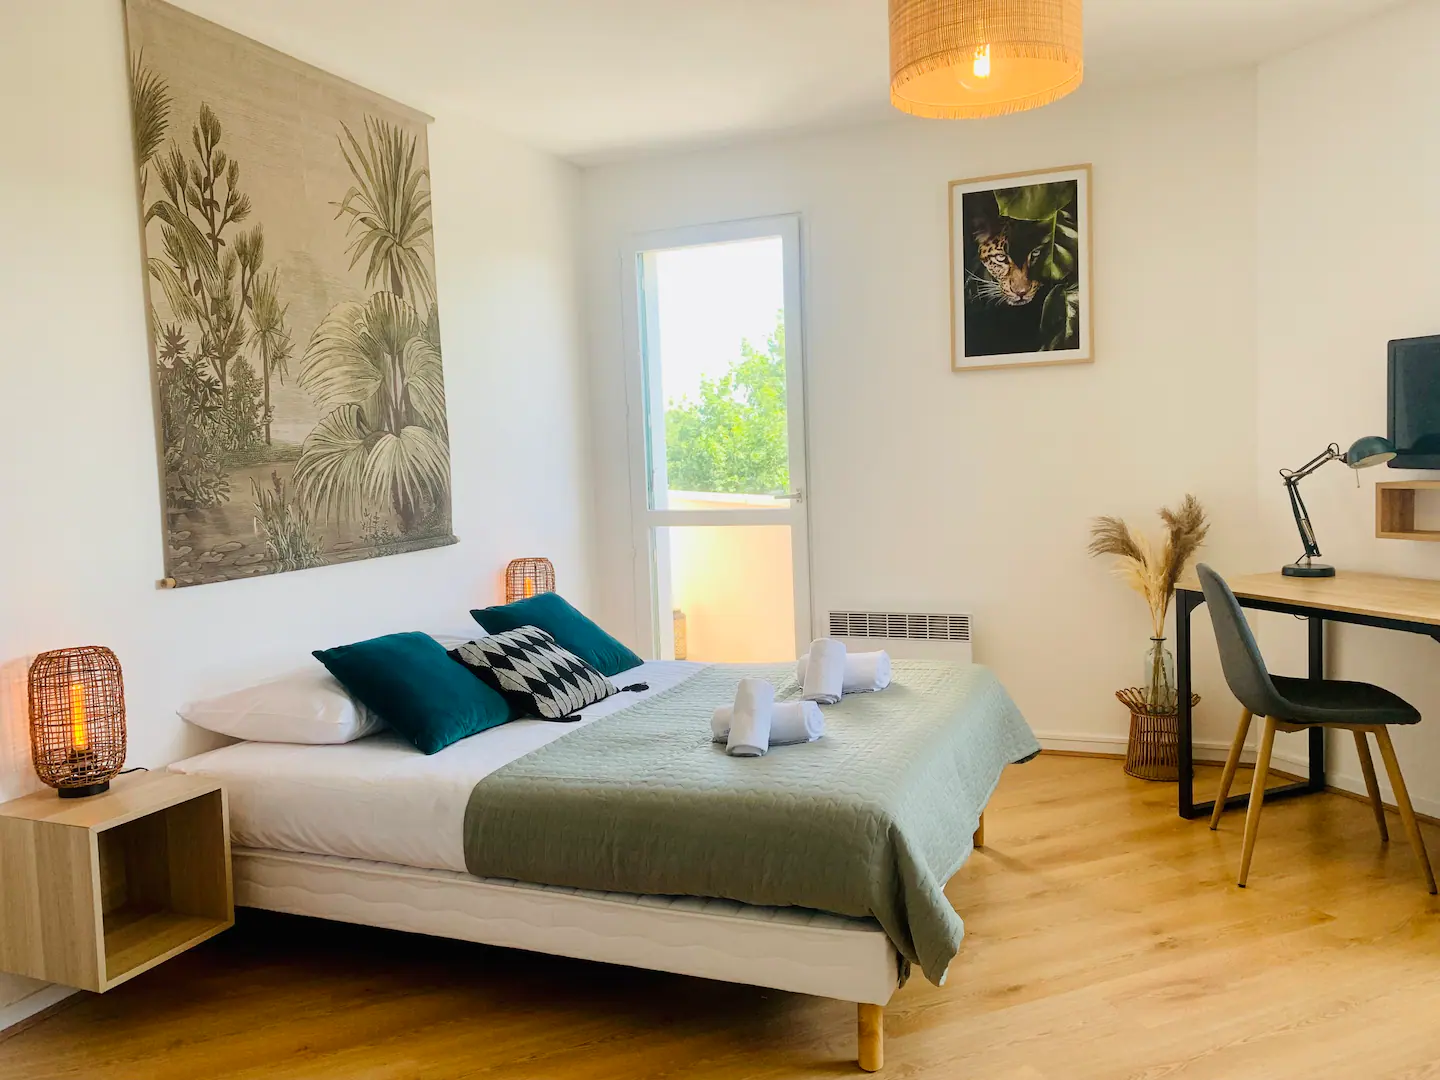 rennes-host-airbnb-conciergerie-le-wild-appartement-bord-vilaine-alphonce-guerin-2